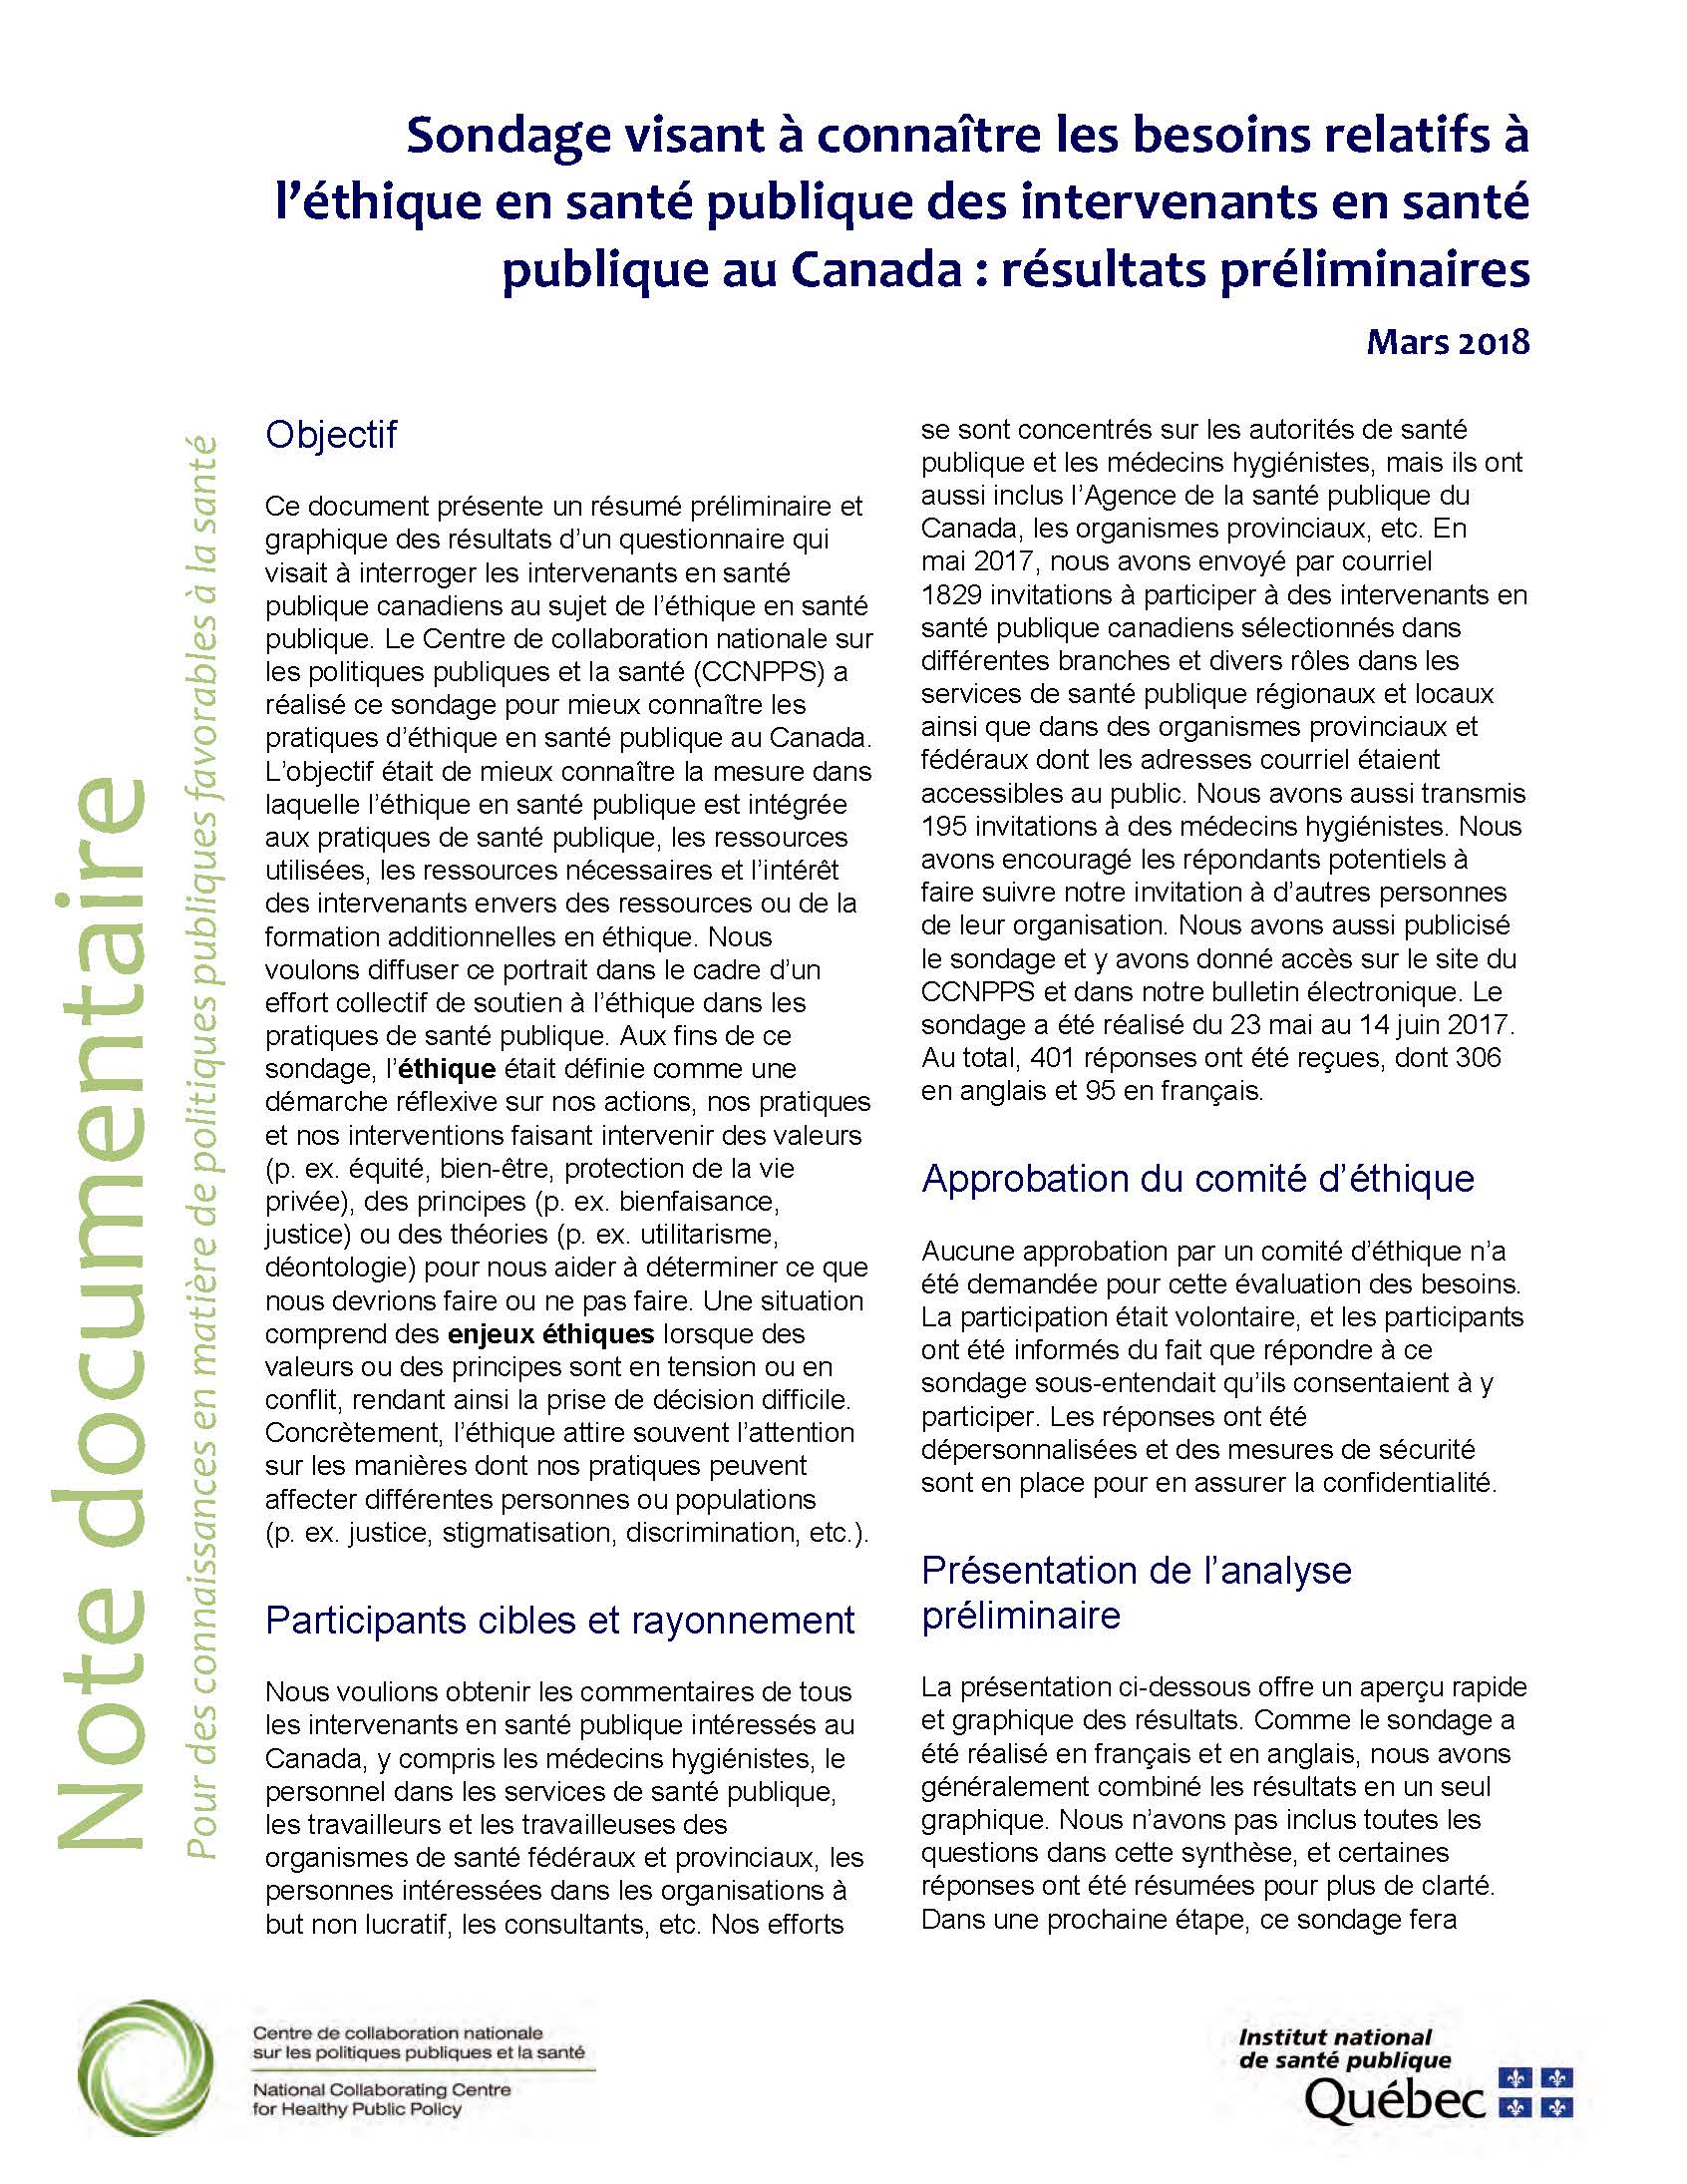 Sondage visant à connaître les besoins relatifs à l’éthique en santé publique des intervenants en santé publique au Canada : résultats préliminaires